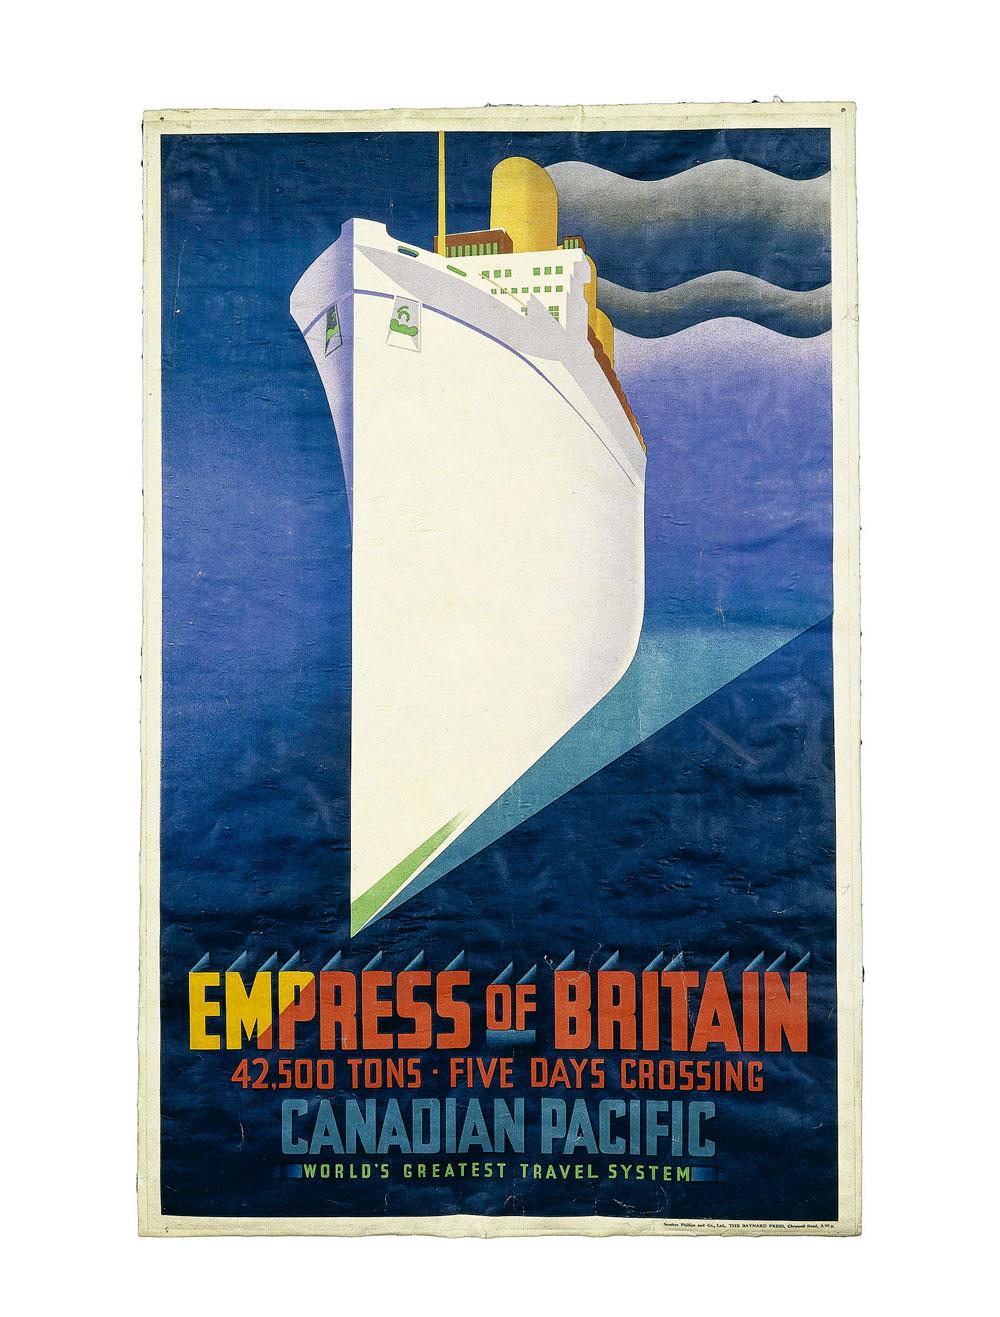 Construit en 1930, l'Empress of Britain était le navire le plus rapide et le plus luxueux de son époque.